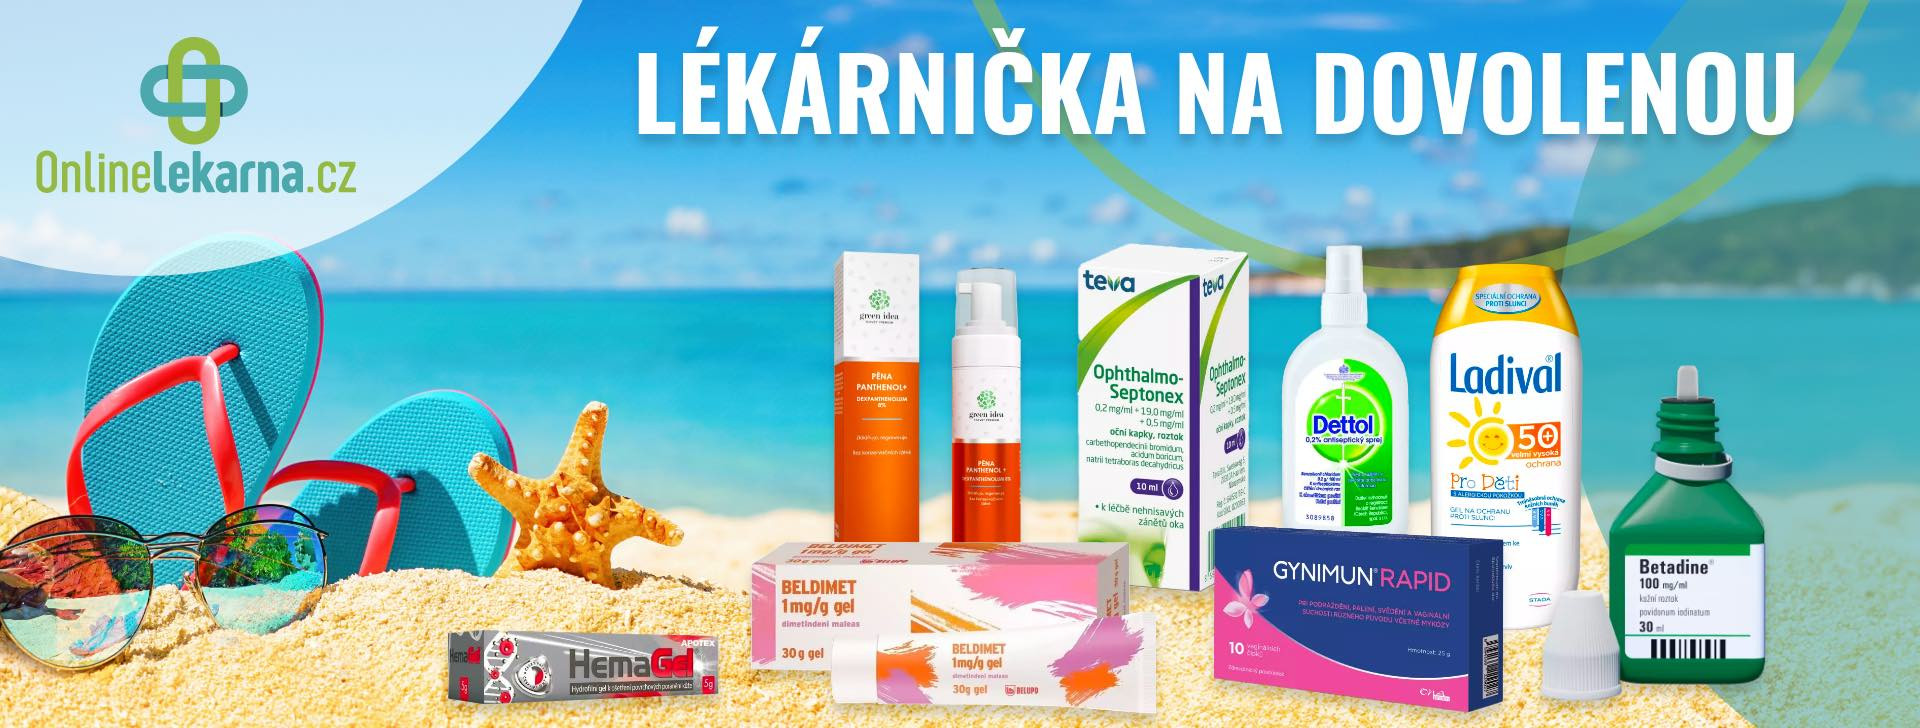 Onlinelekarna.cz | Lékárnička na dovolenou 